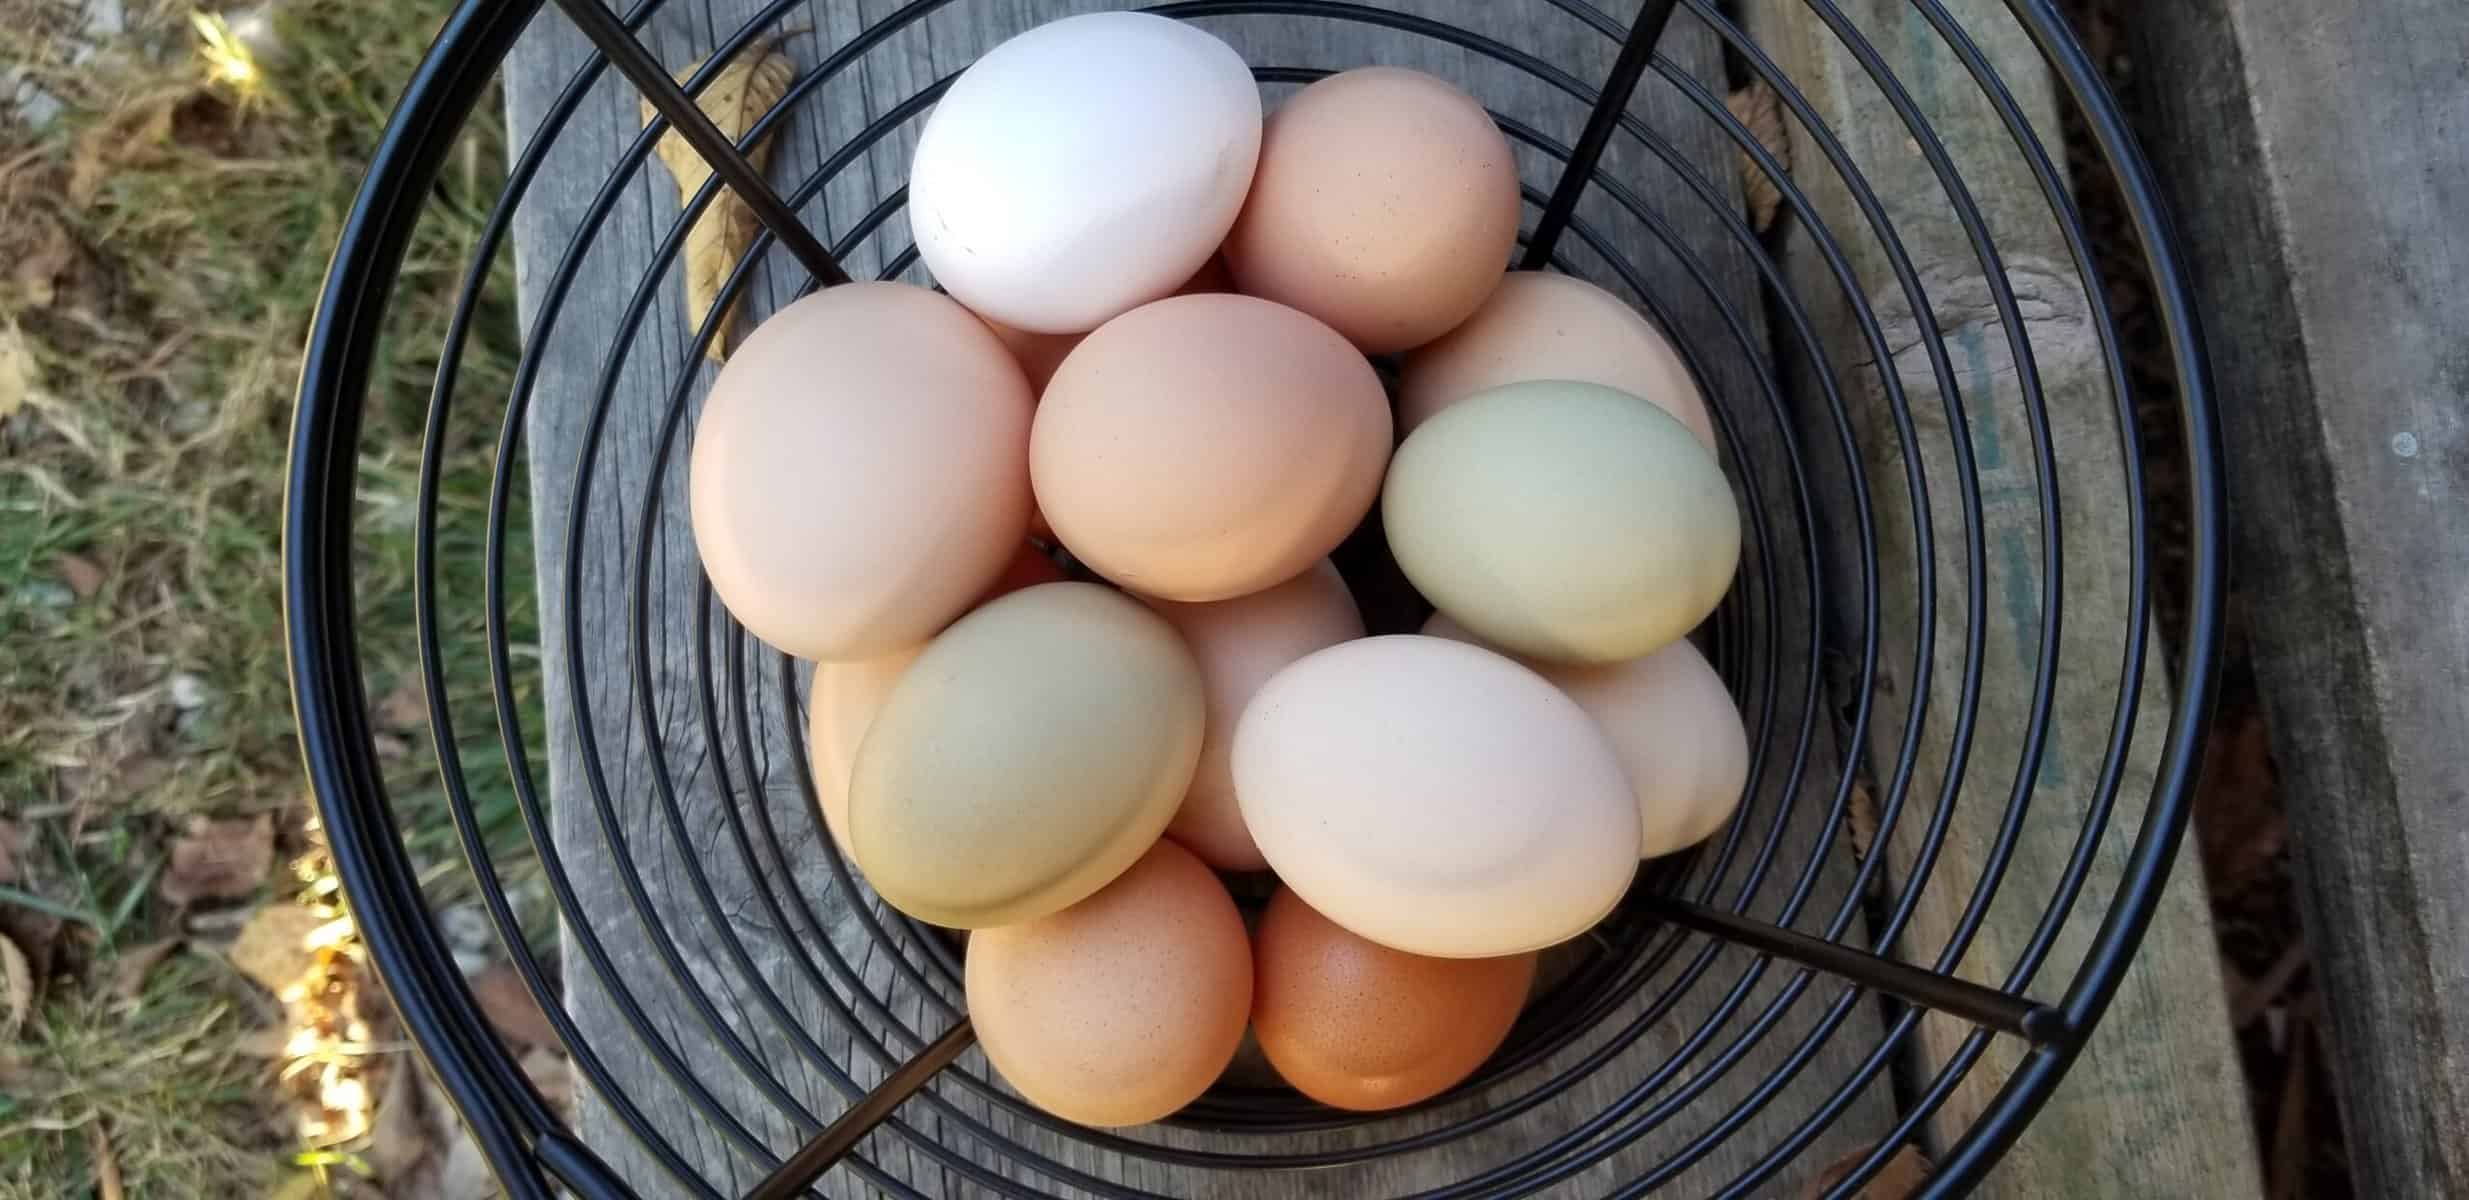 fresh picked multicolored farm fresh eggs in a basket